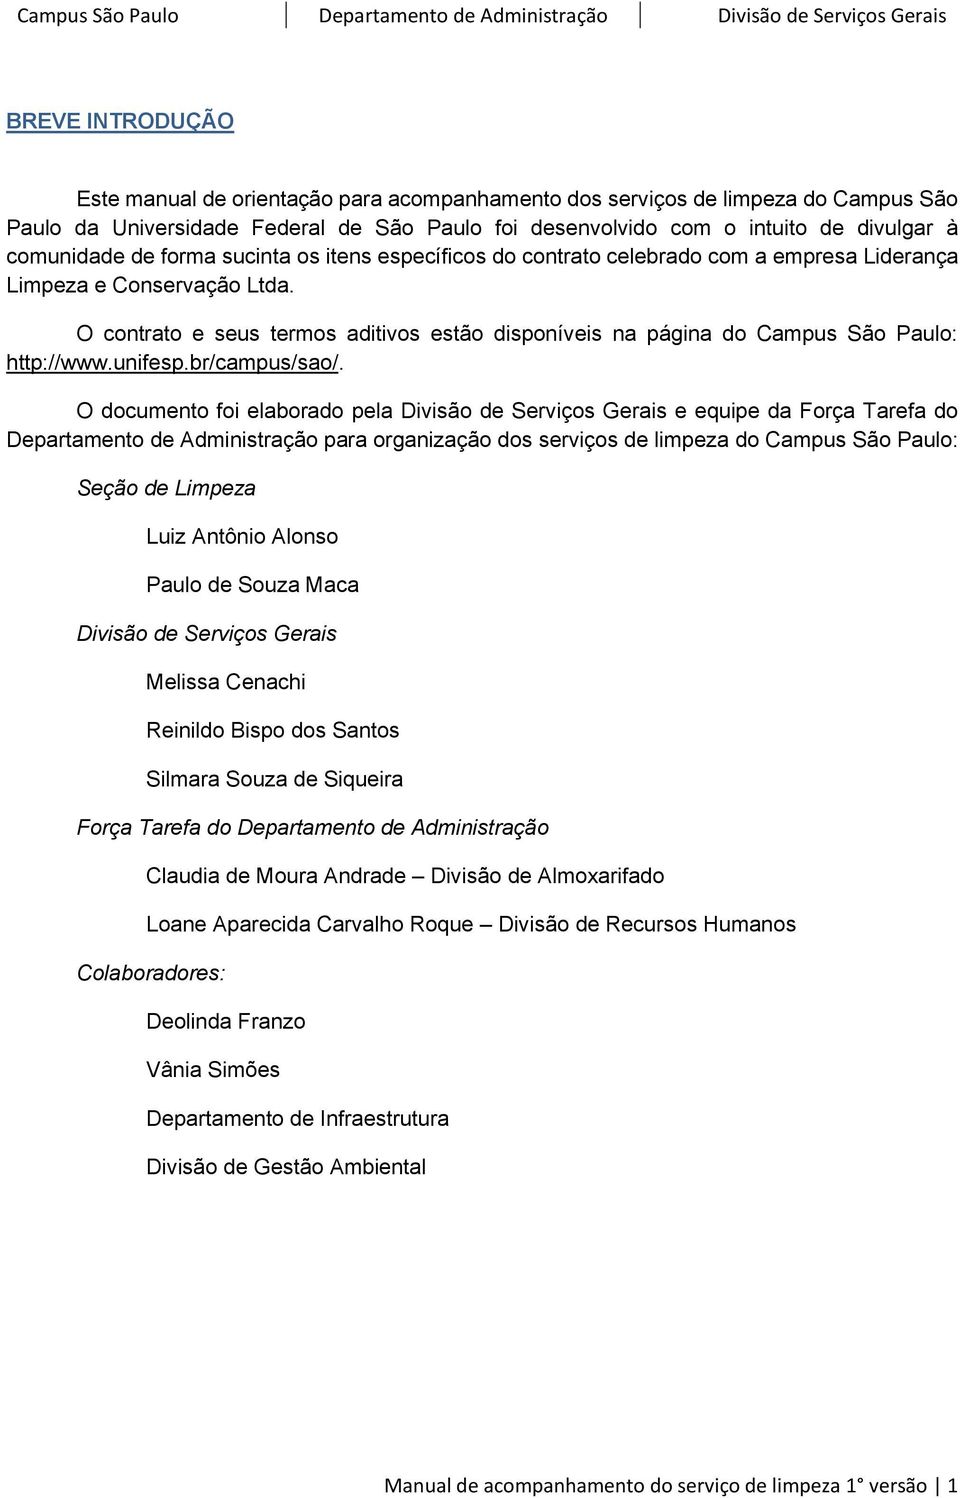 O contrato e seus termos aditivos estão disponíveis na página do Campus São Paulo: http://www.unifesp.br/campus/sao/.